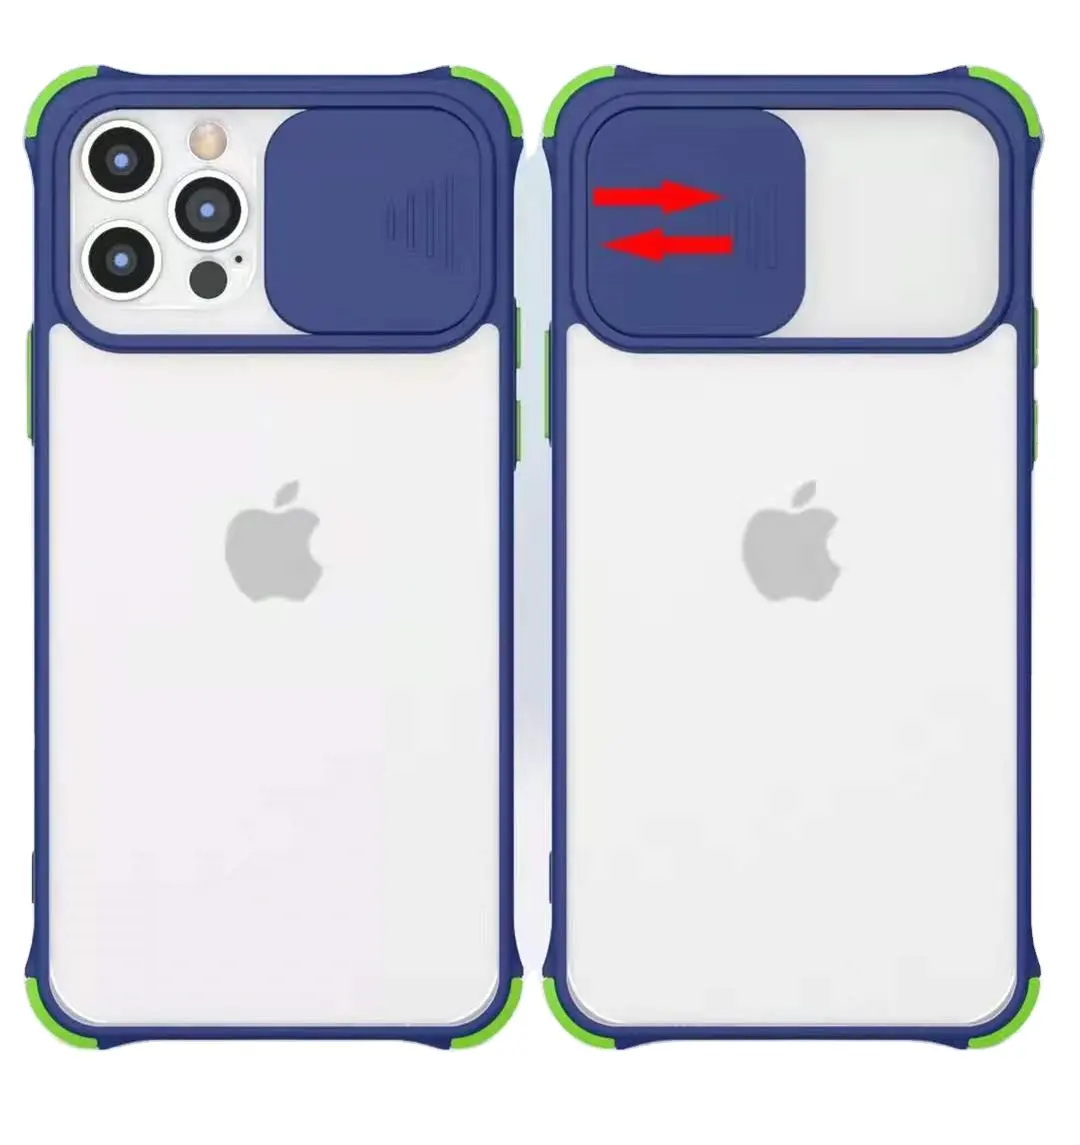 Funda protectora de teléfono móvil iPhone 12 pro Max, cubierta protectora antigolpes para teléfono móvil iPhone 12 12 pro Max